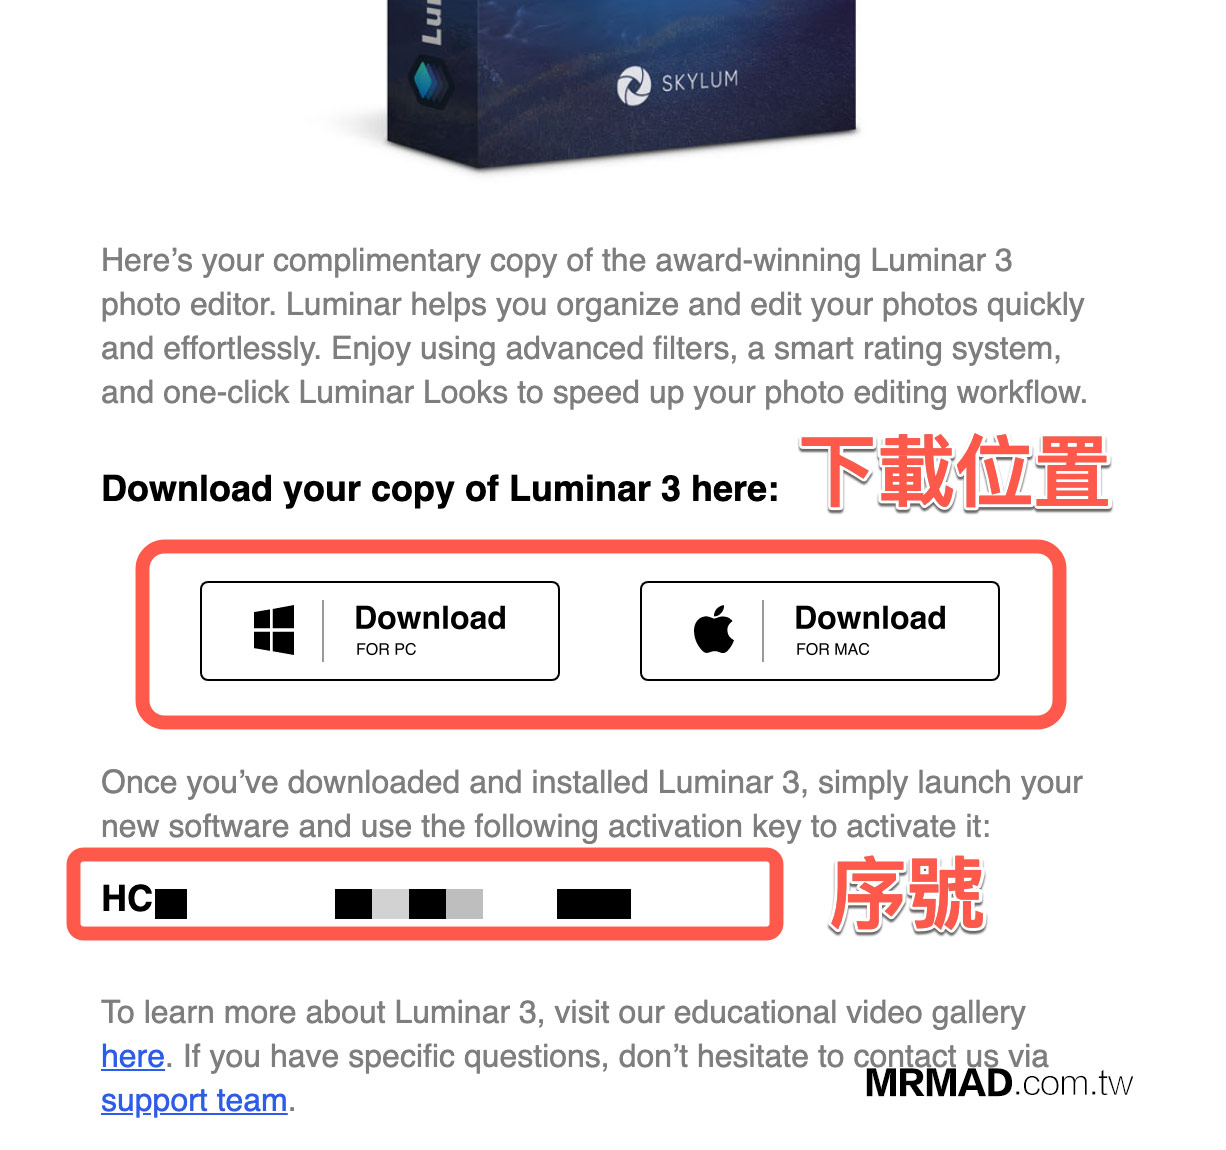 免費下載 Luminar 3 正式版方法4